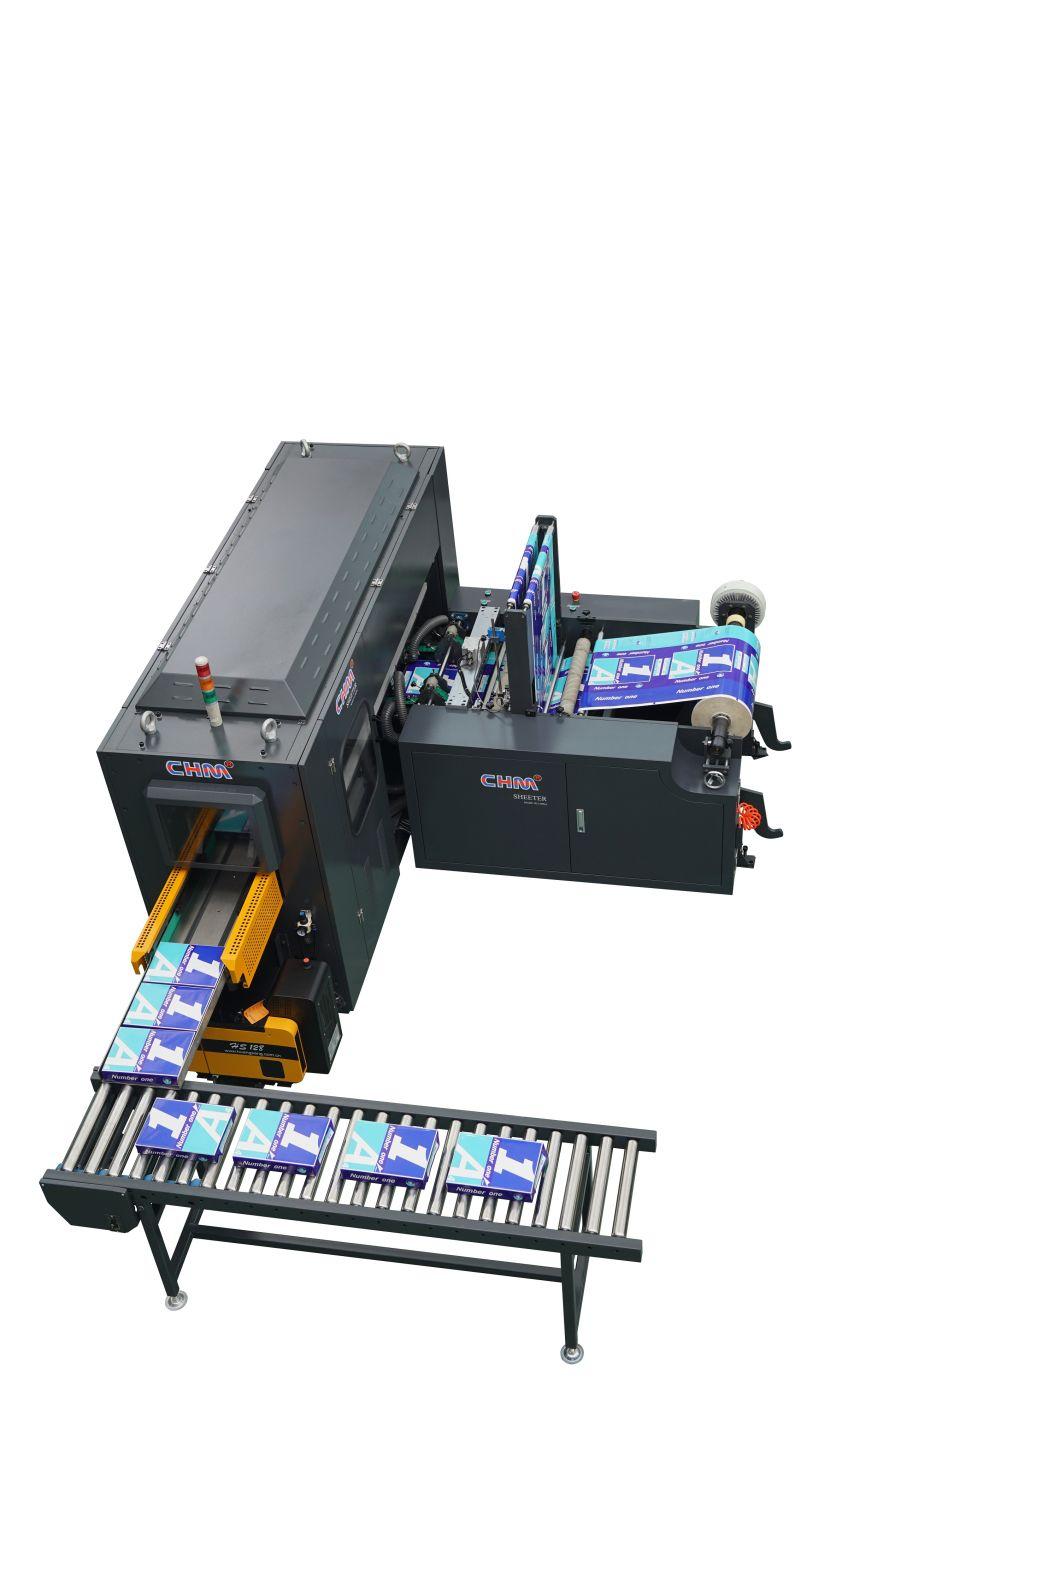 China A4 Copy Paper Cutting Machine Factory